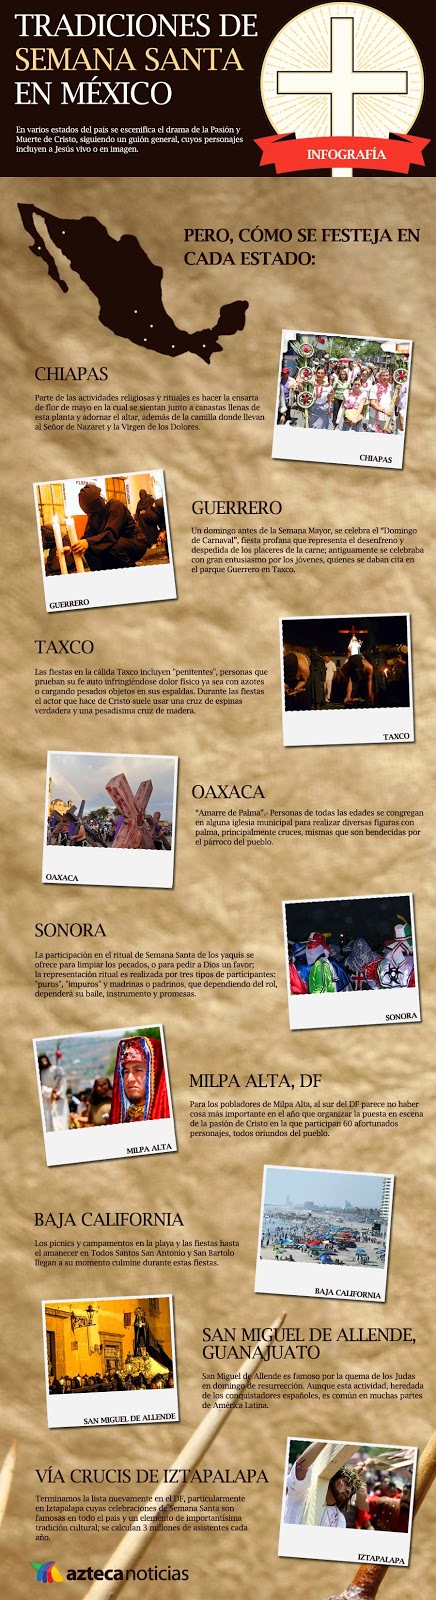 Semana Santa Infographic in Spanish